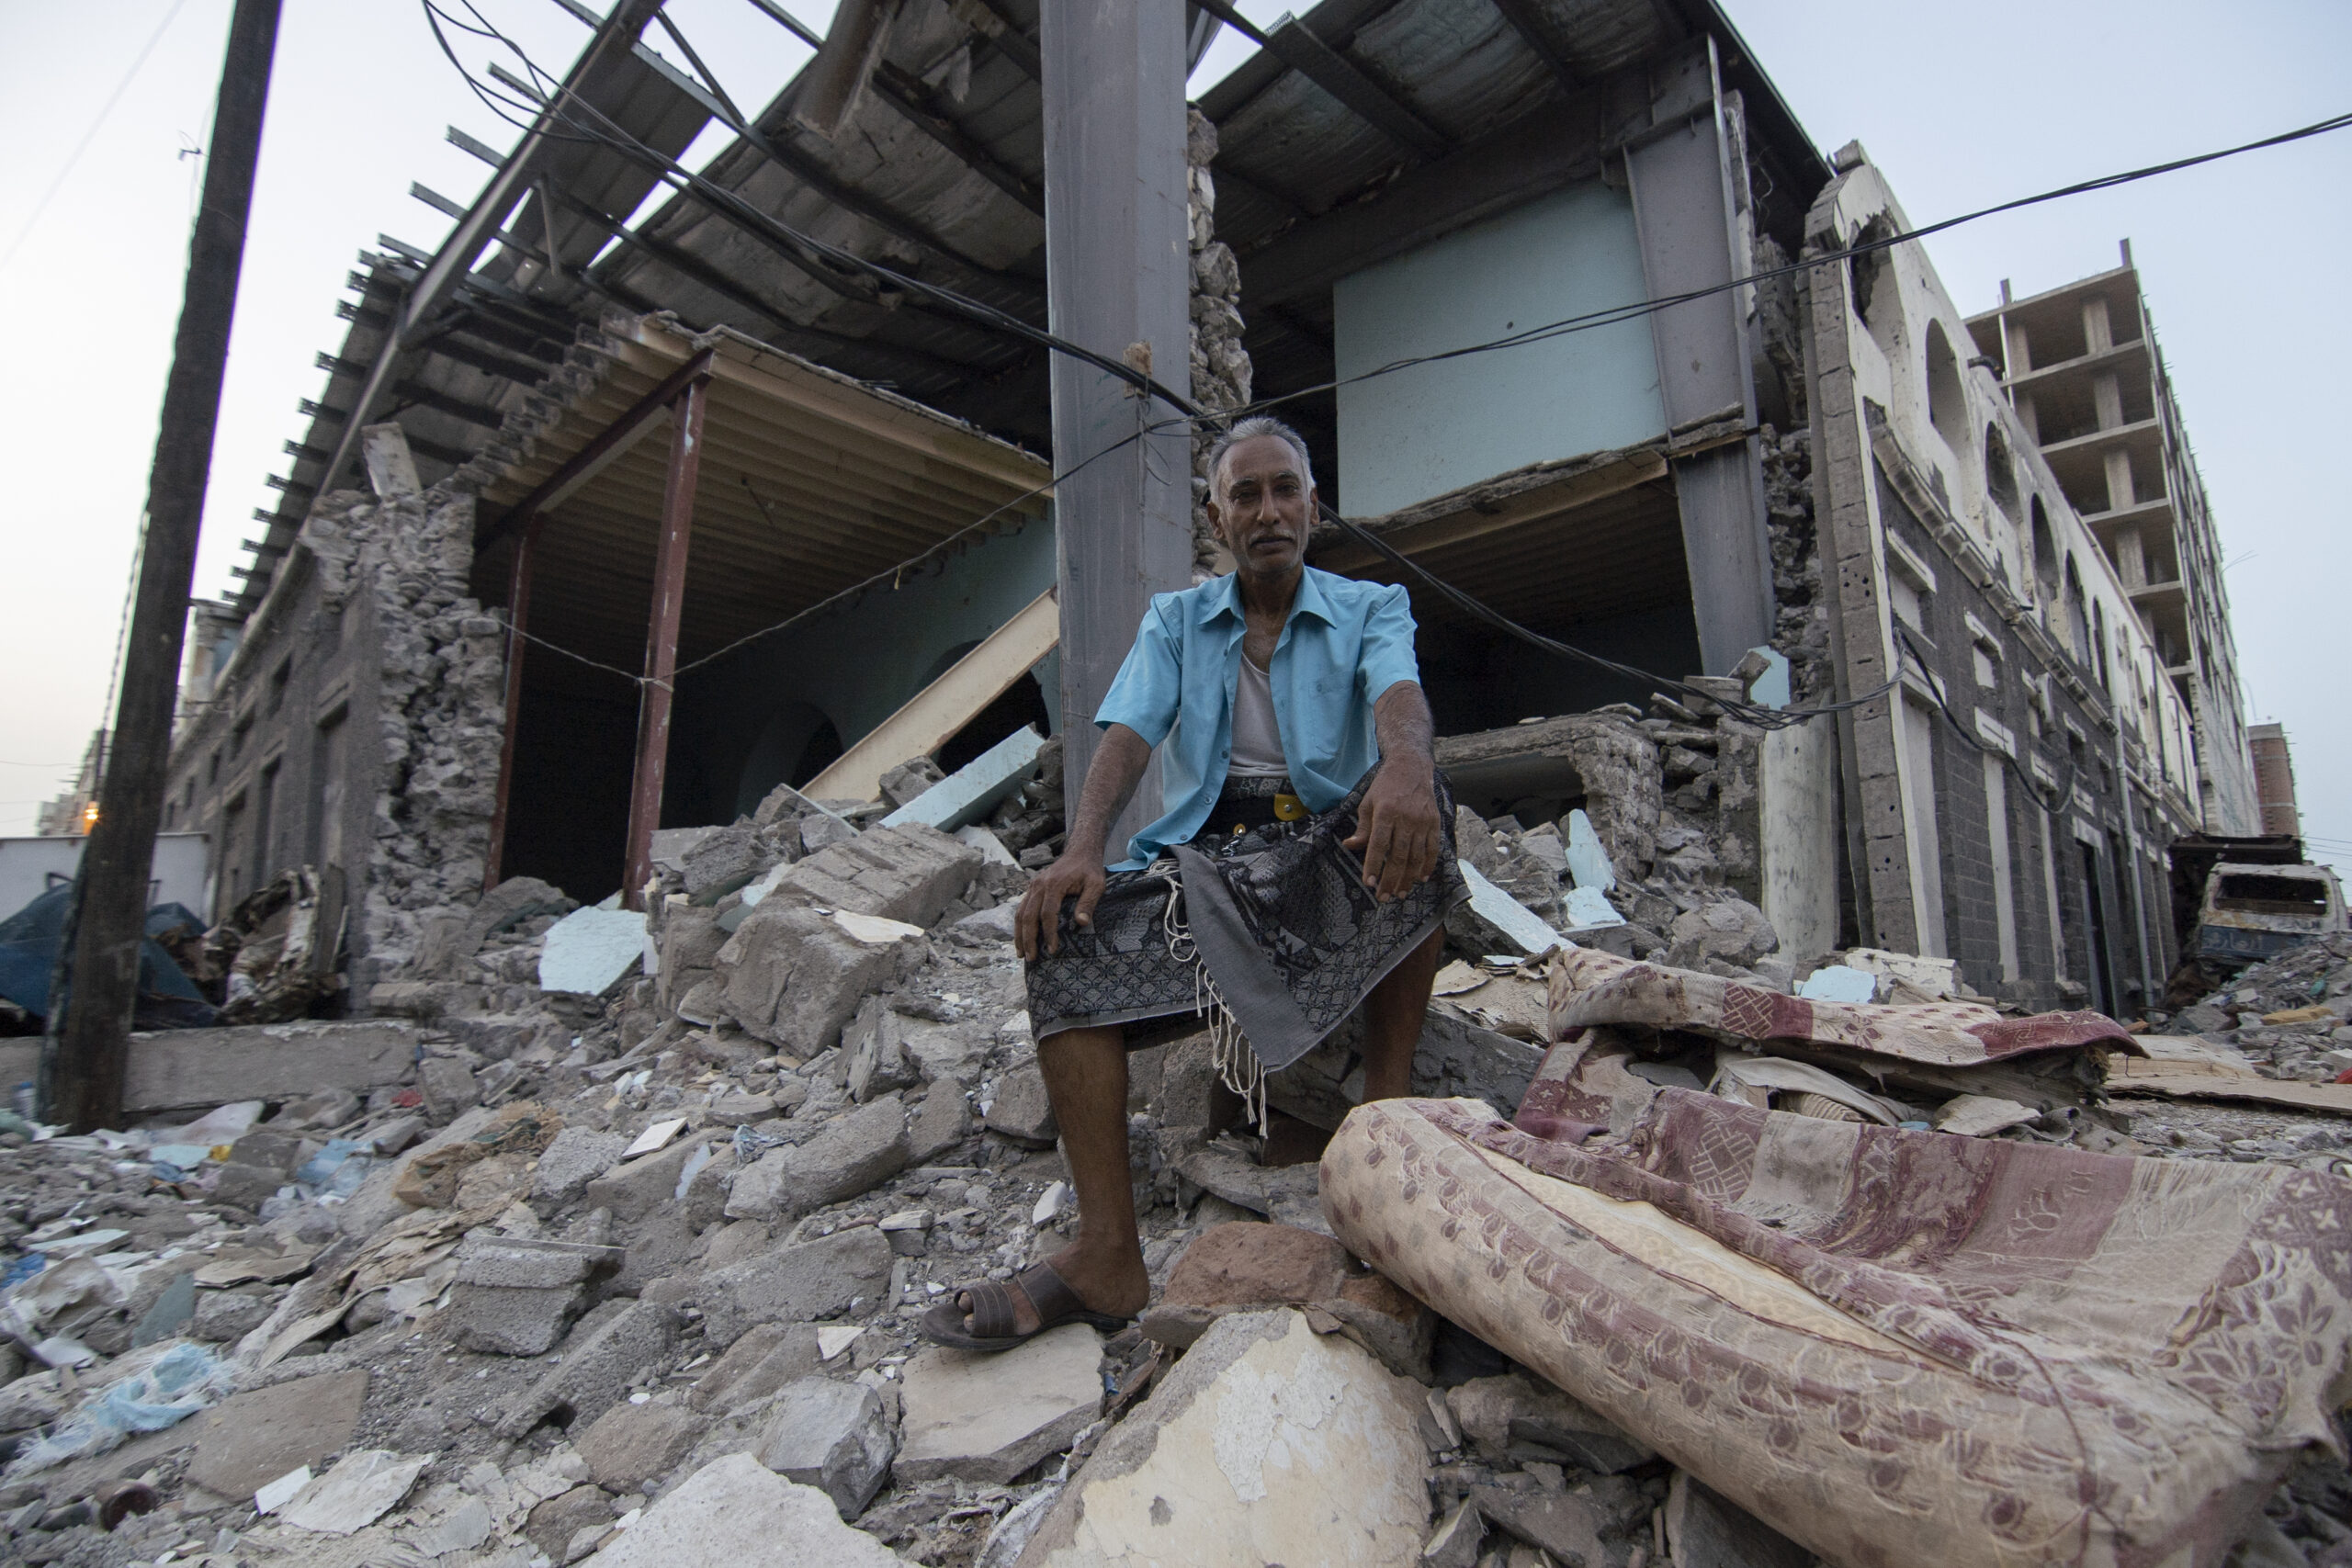 De 52-jarige Shaker Ali zit voor wat vroeger een marktplaats was in Aden, Jemen. © UNHCR/Saleh Bahulais